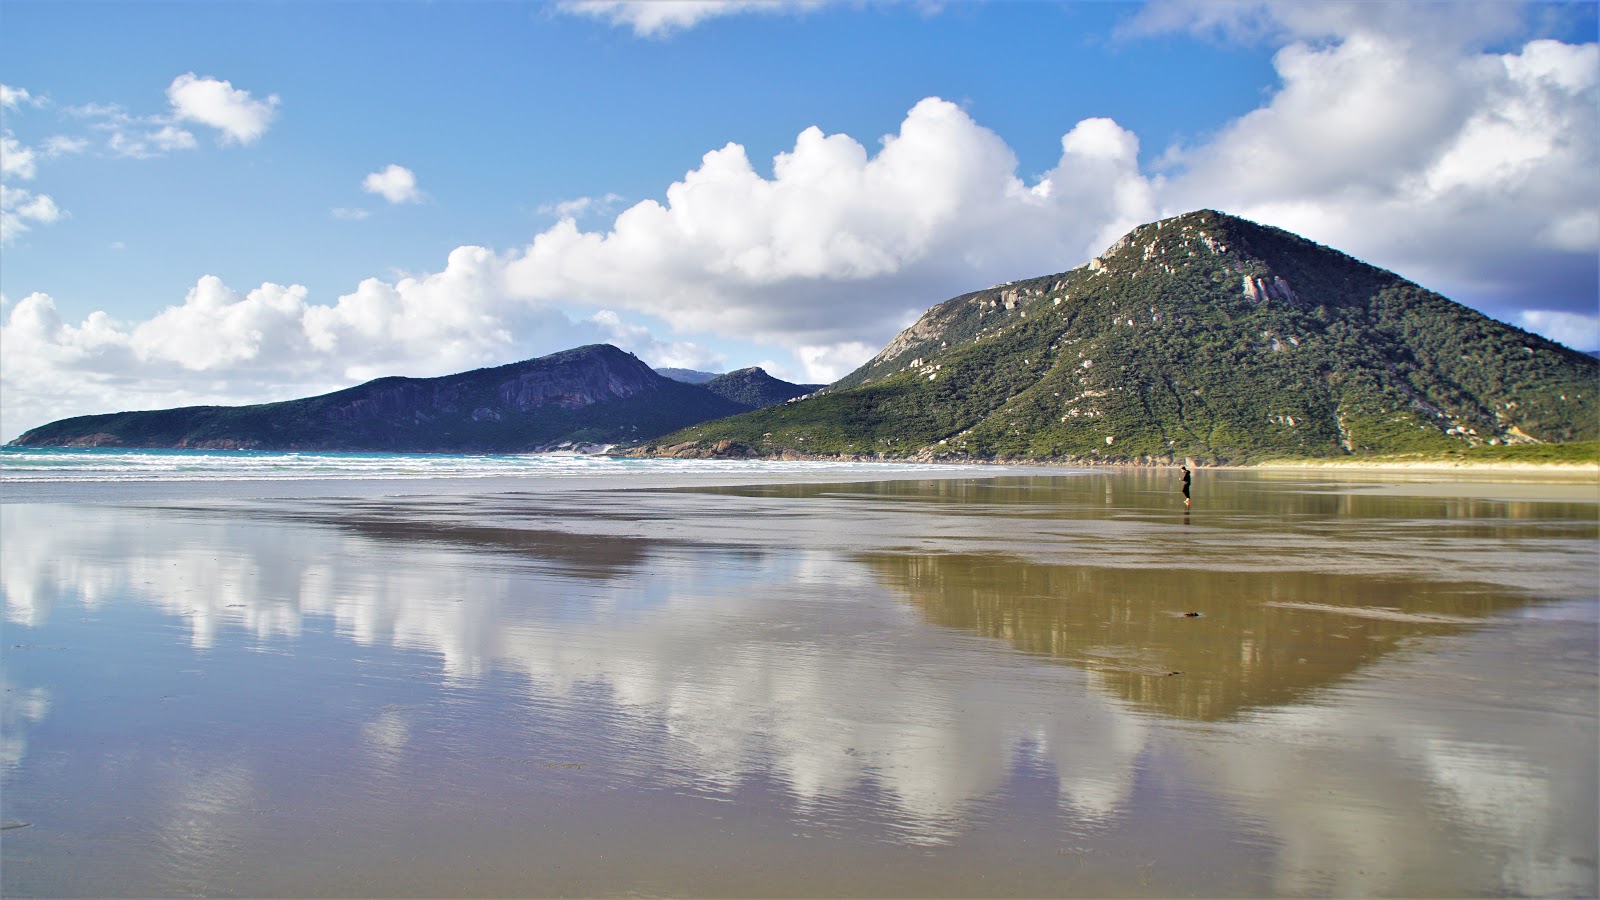 Foto di Oberon Bay Beach ubicato in zona naturale